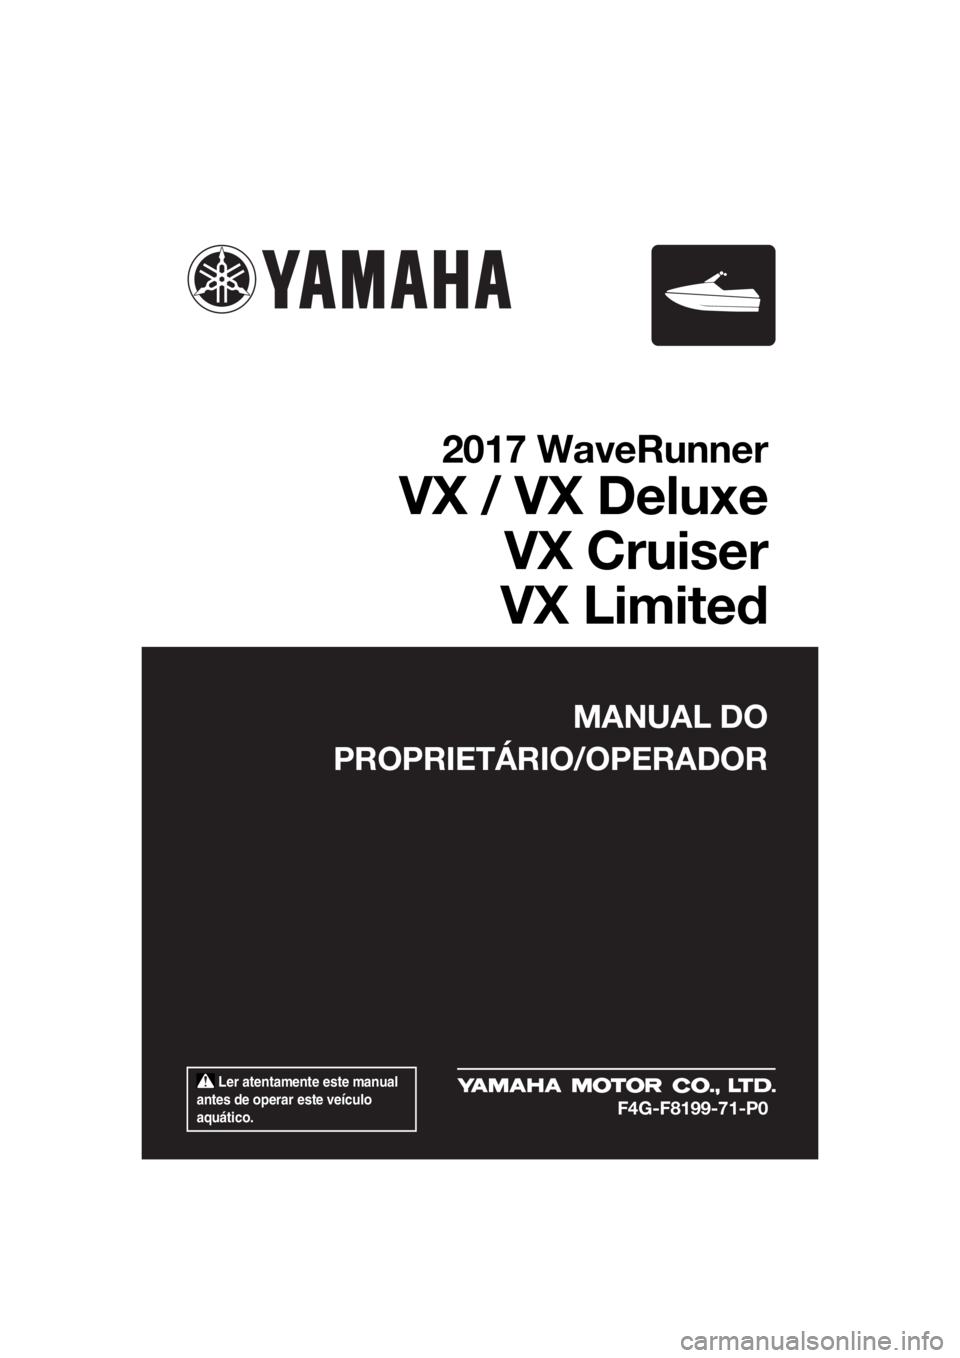 YAMAHA VX LIMITED 2017  Manual de utilização (in Portuguese)  Ler atentamente este manual 
antes de operar este veículo 
aquático.
MANUAL DO
PROPRIETÁRIO/OPERADOR
2017 WaveRunner
VX / VX Deluxe
VX Cruiser
VX Limited
F4G-F8199-71-P0
UF4G71P0.book  Page 1  Tue